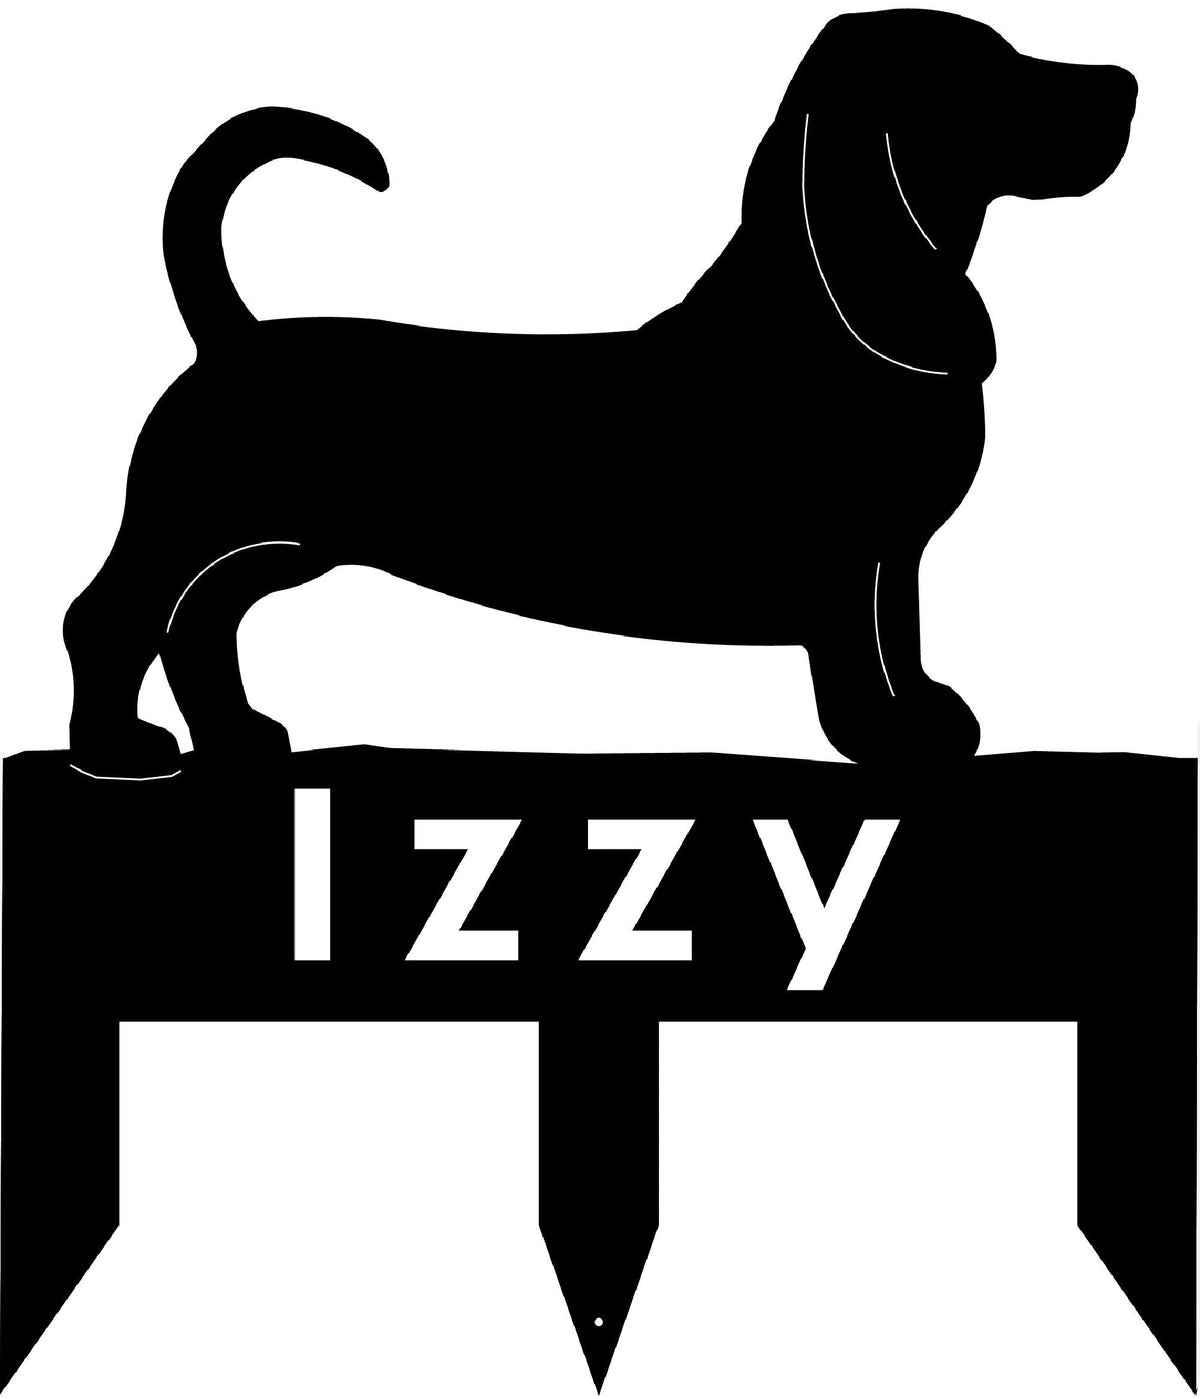 Basset Hound dog address stake